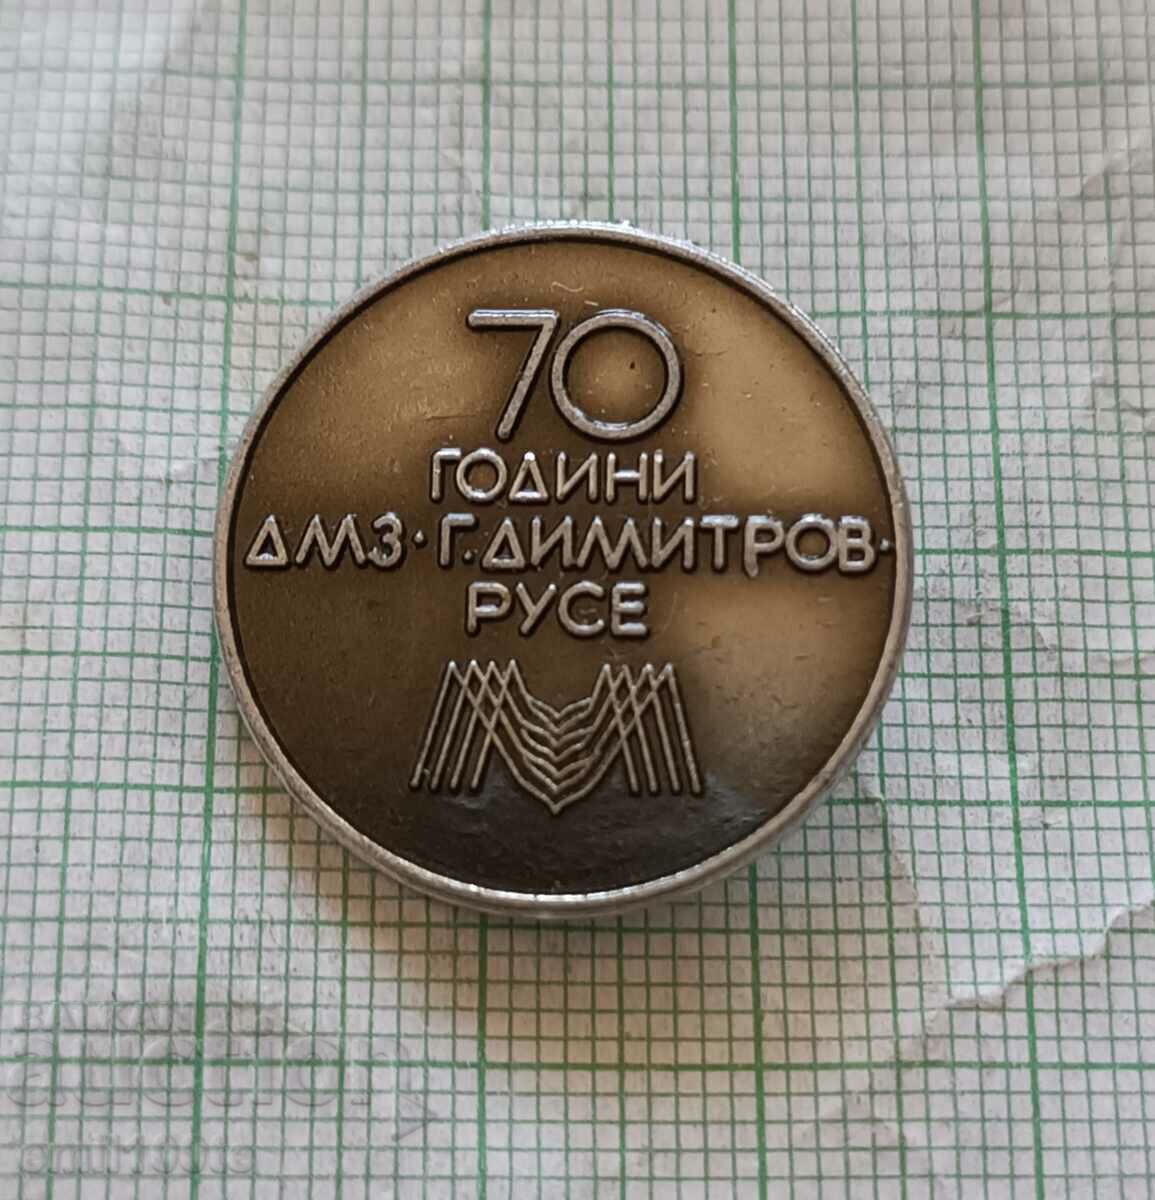 Σήμα - 70 χρόνια DMZ Georgi Dimitrov Ruse